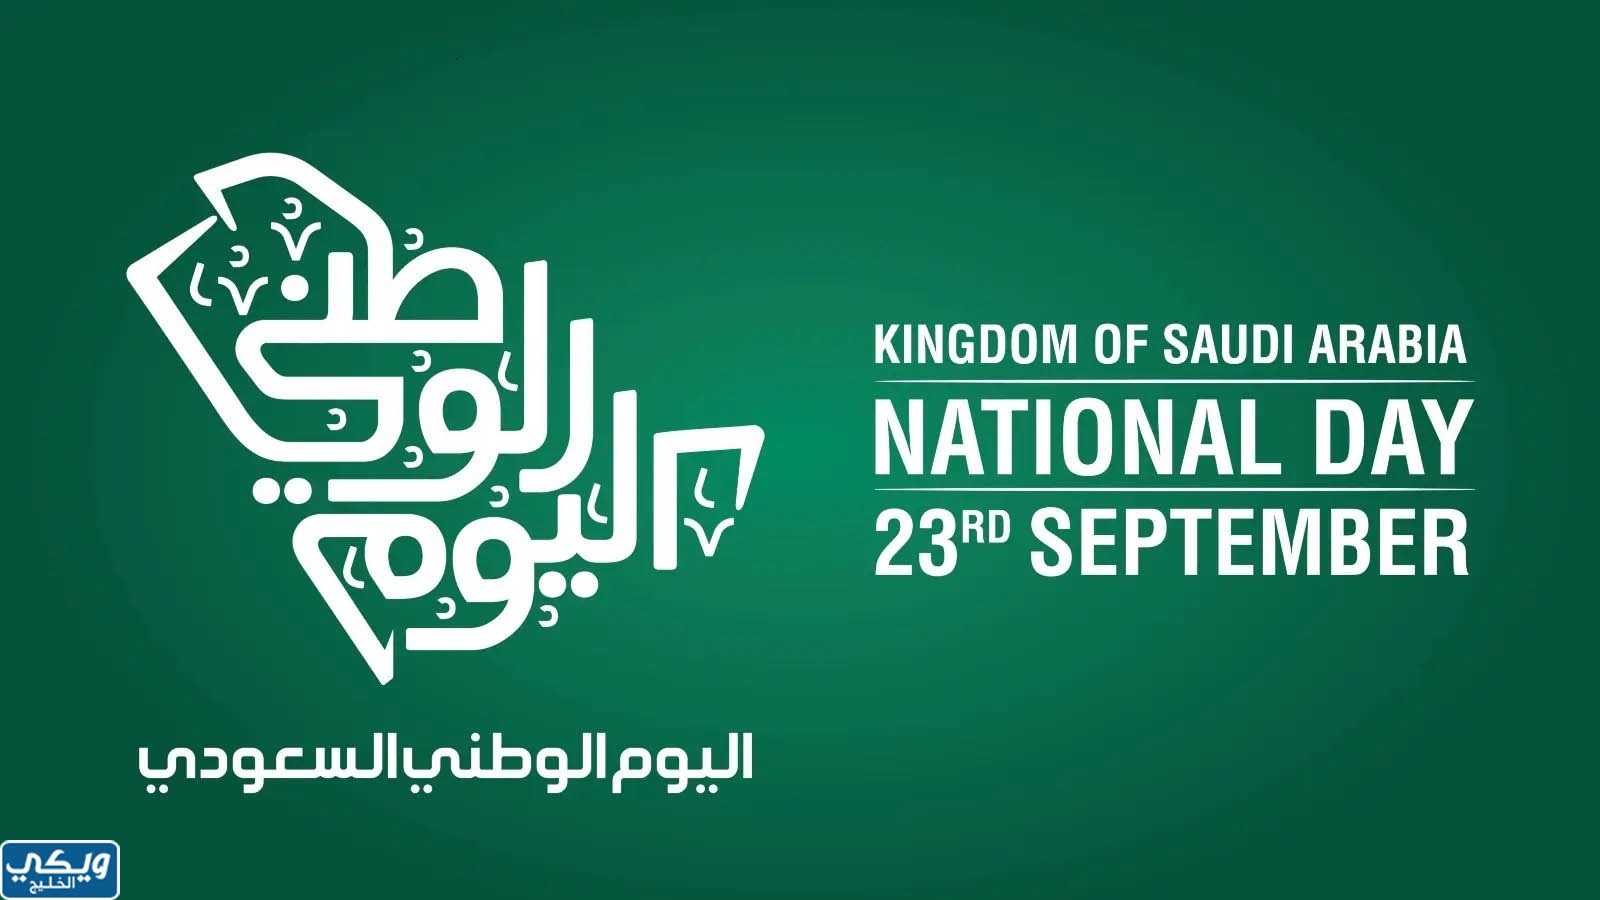 خلفيات اليوم الوطني السعودي